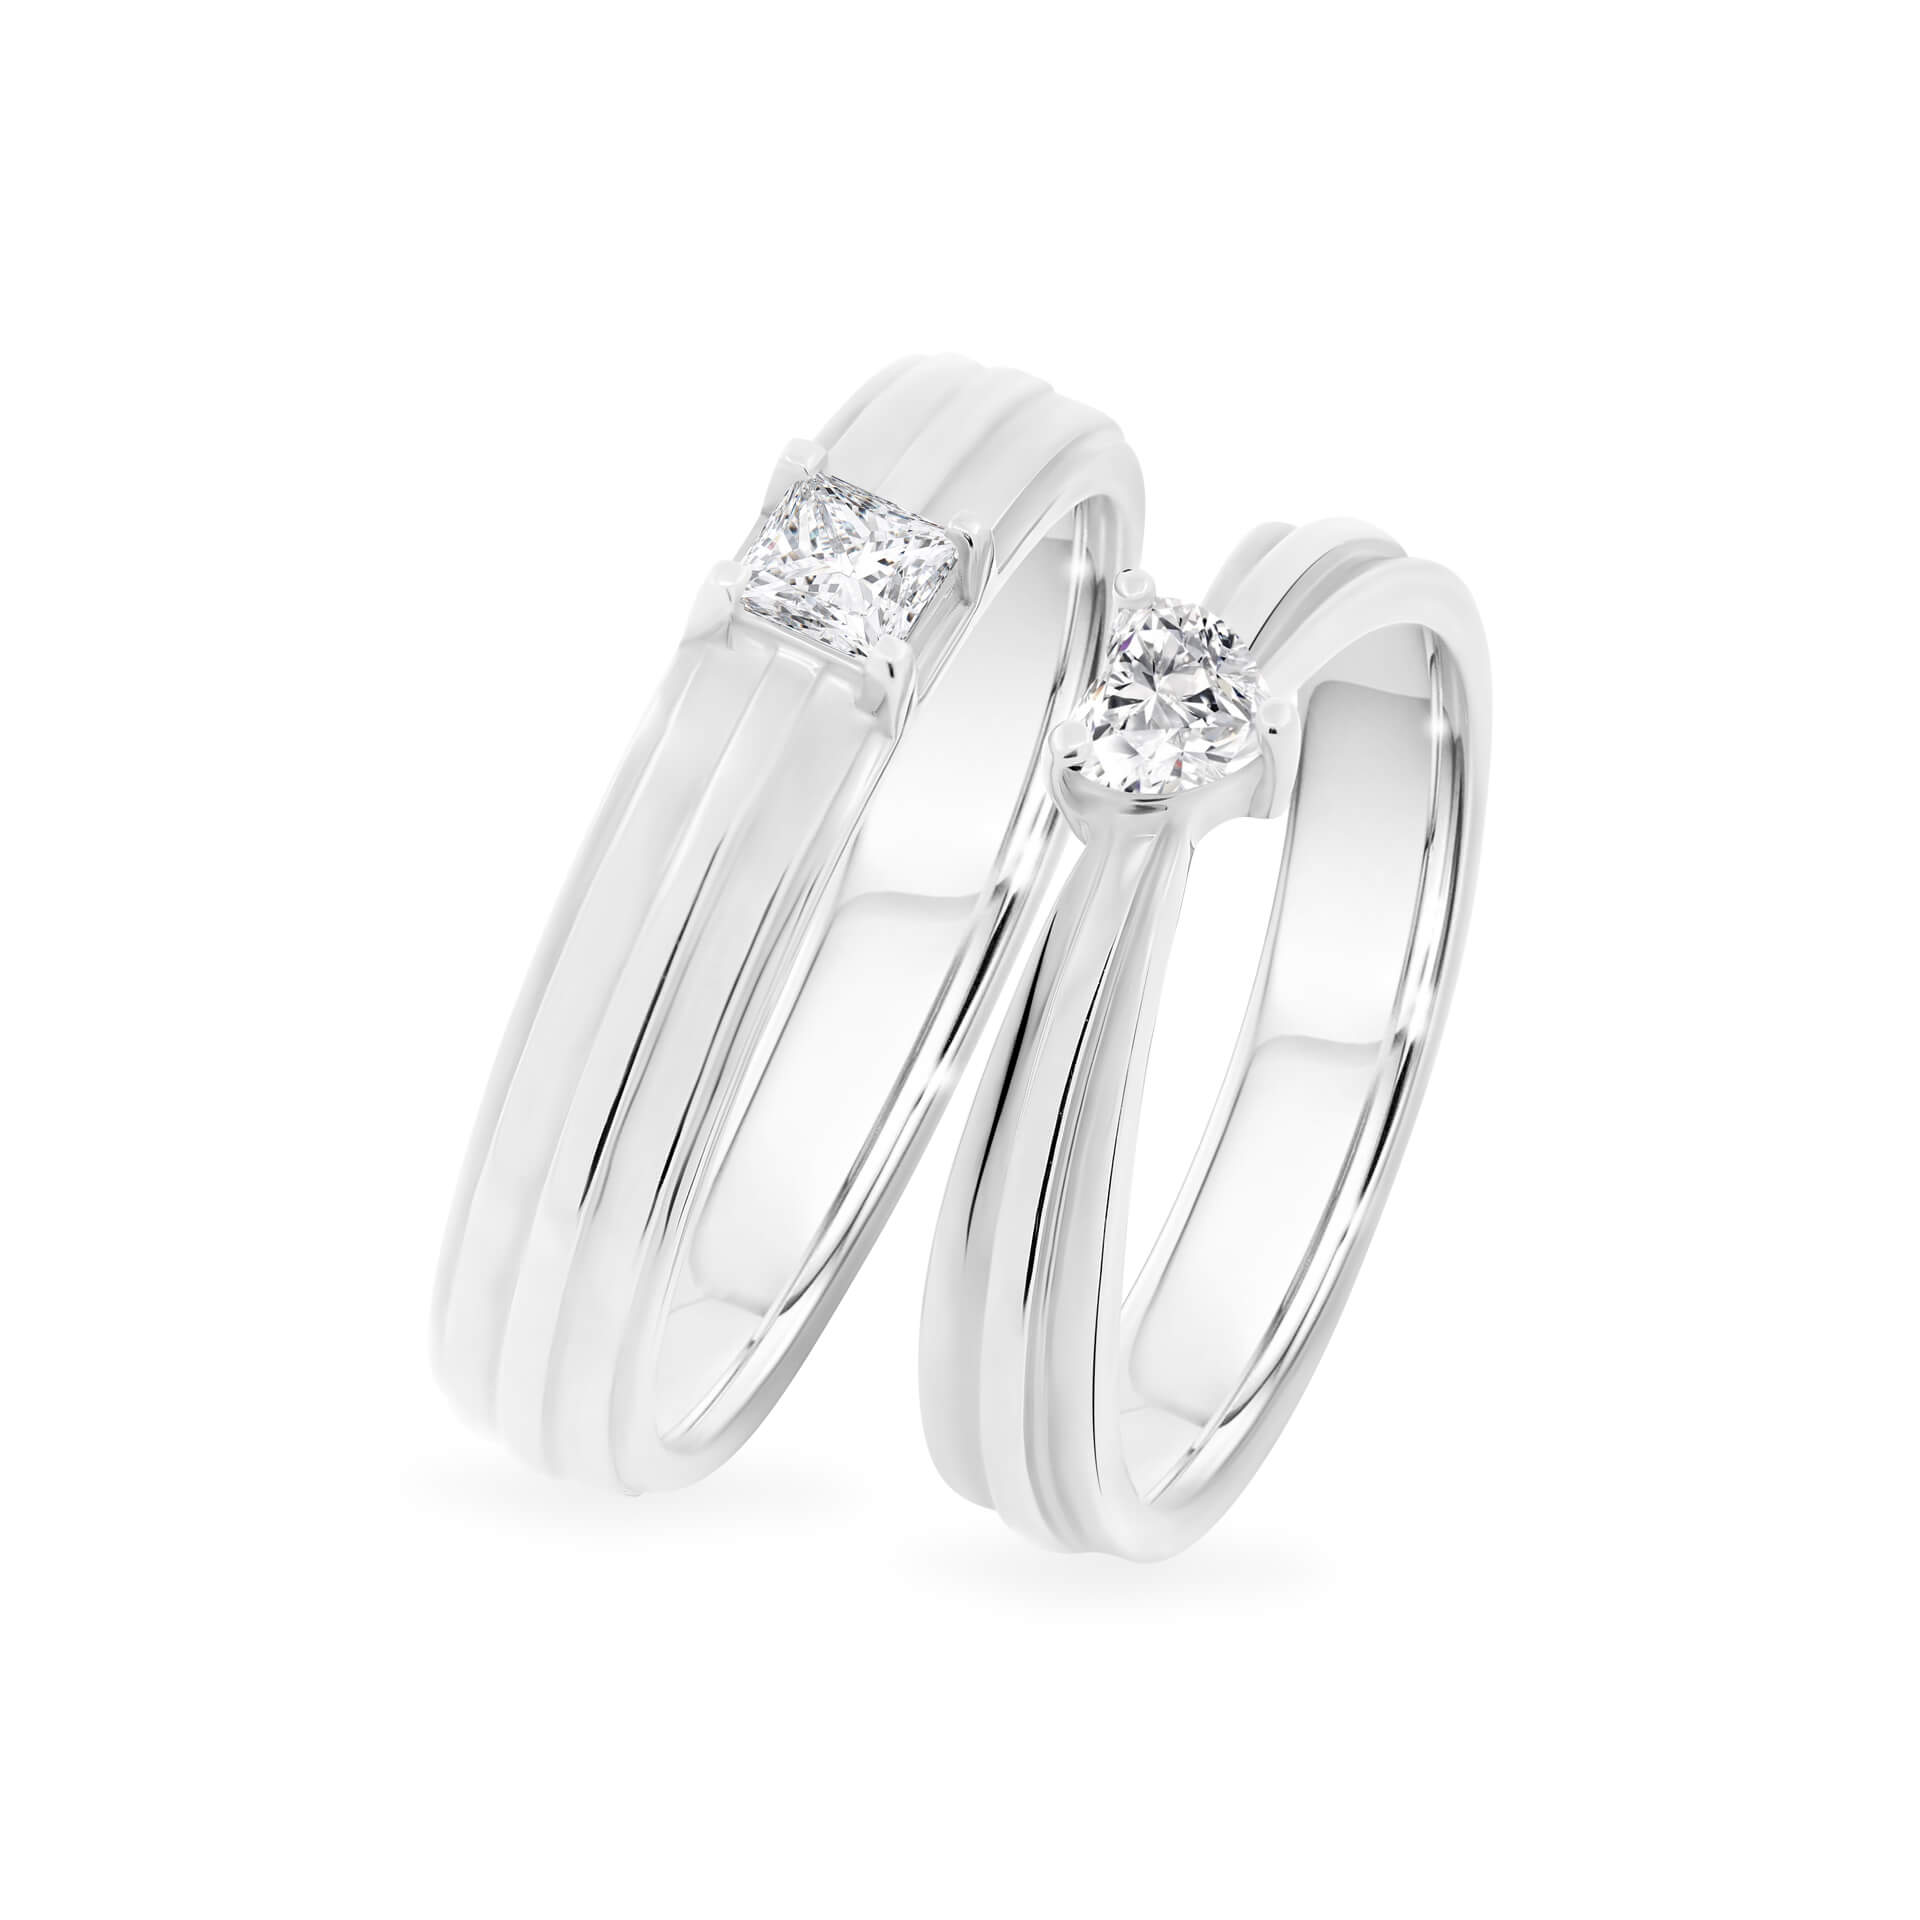 Nhẫn cưới Kim cương IWR160-3W